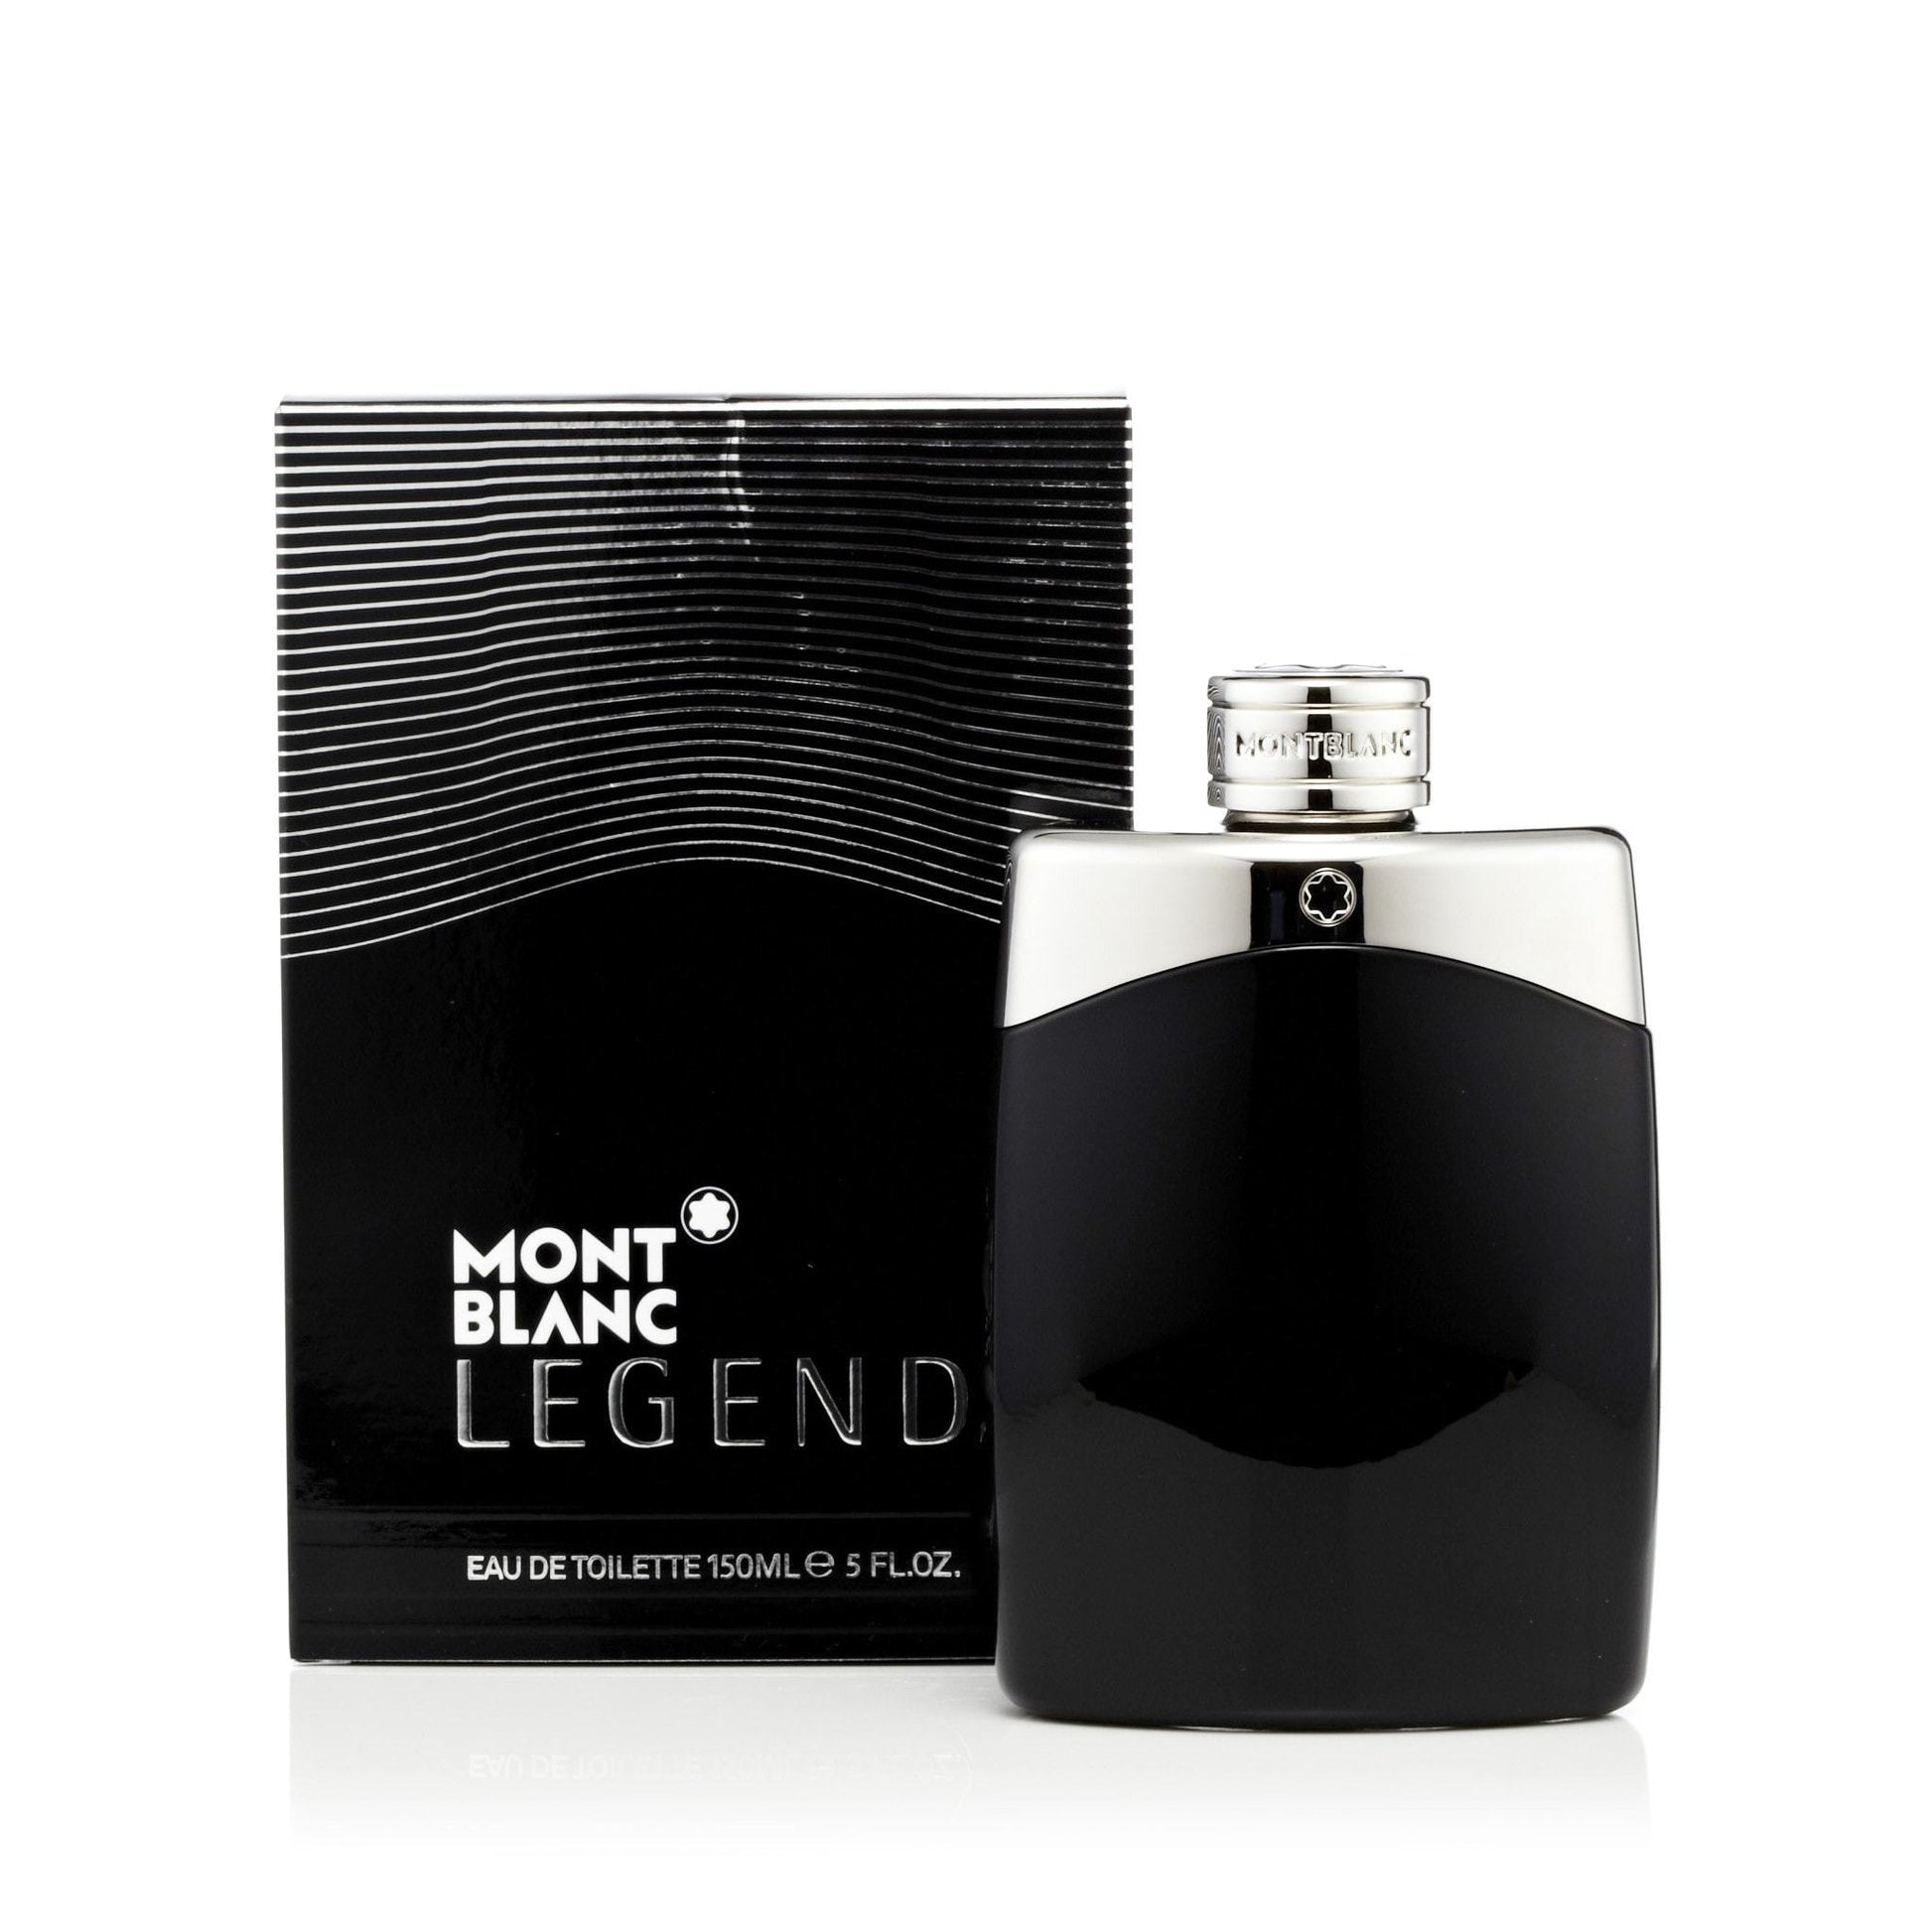 Legend Eau de Toilette Spray for Men by Montblanc, Product image 1